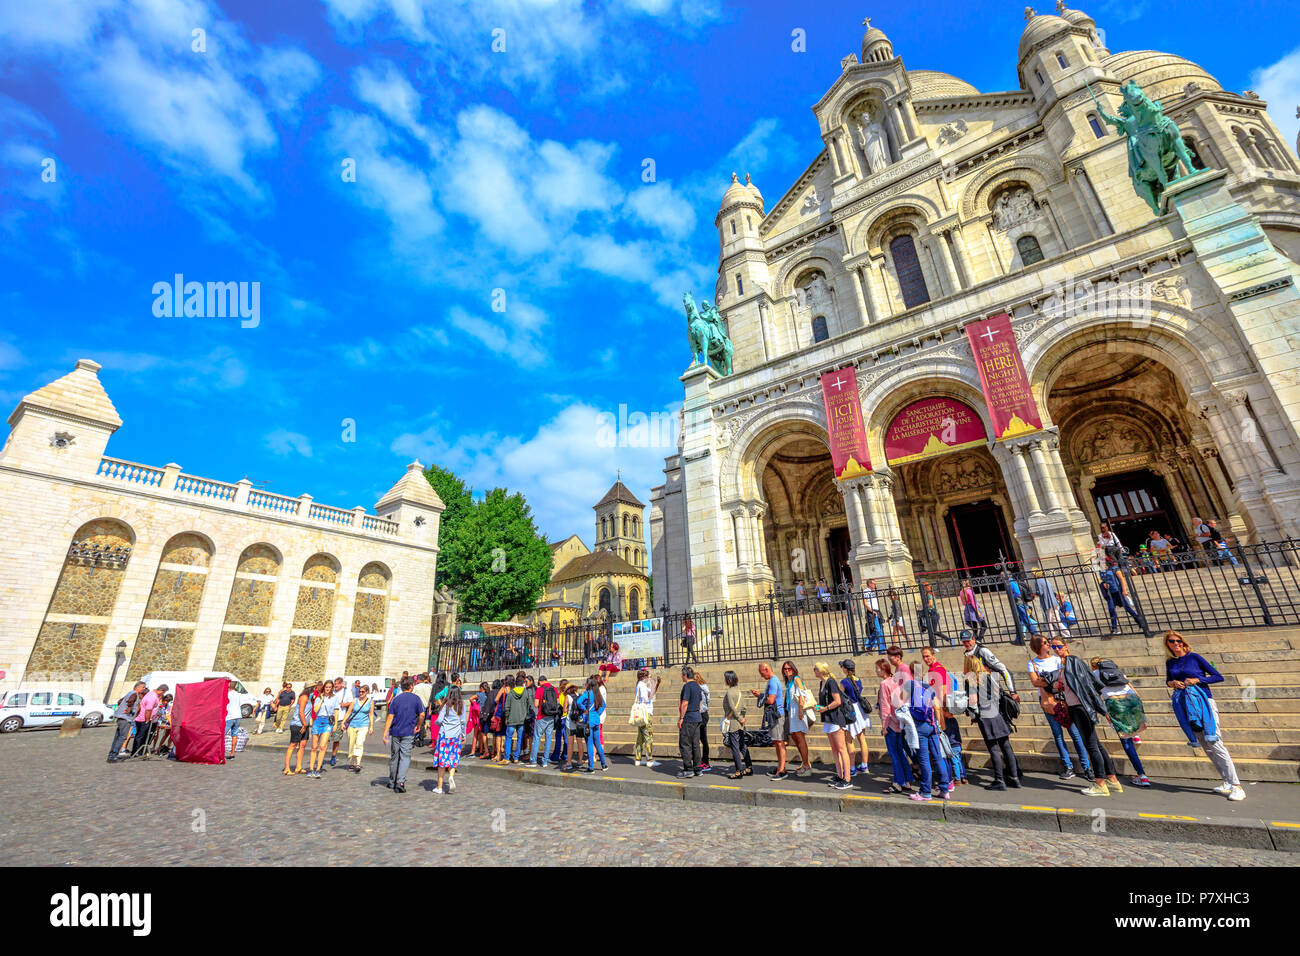 París, Francia - Julio 3, 2017: la perspectiva de la gente en frente de la Basílica du Sacré Coeur de Montmartre. Iglesia del Sagrado Corazón de Jesús es una atracción popular y emblemático en París. Día soleado cielo azul. Foto de stock